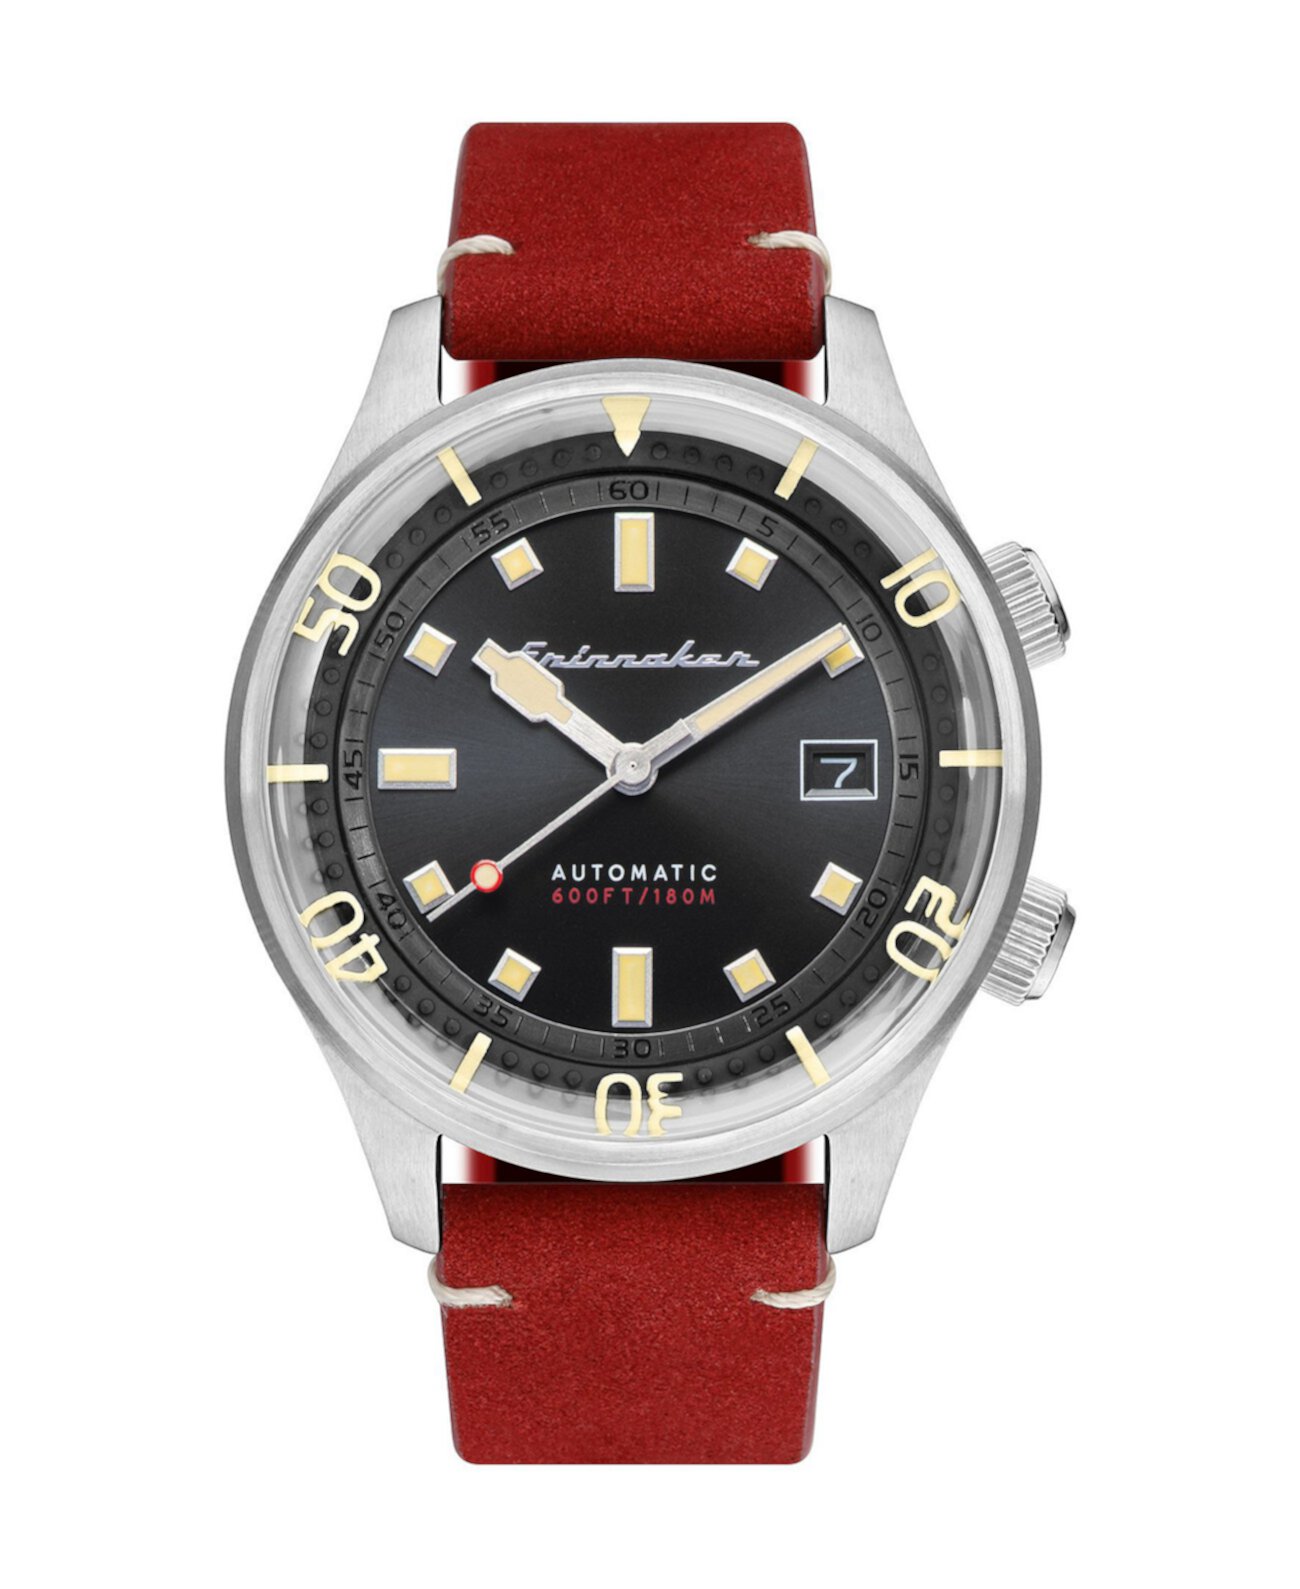 Мужские часы Bradner с автоматическим красным ремешком из натуральной кожи 42 мм Spinnaker